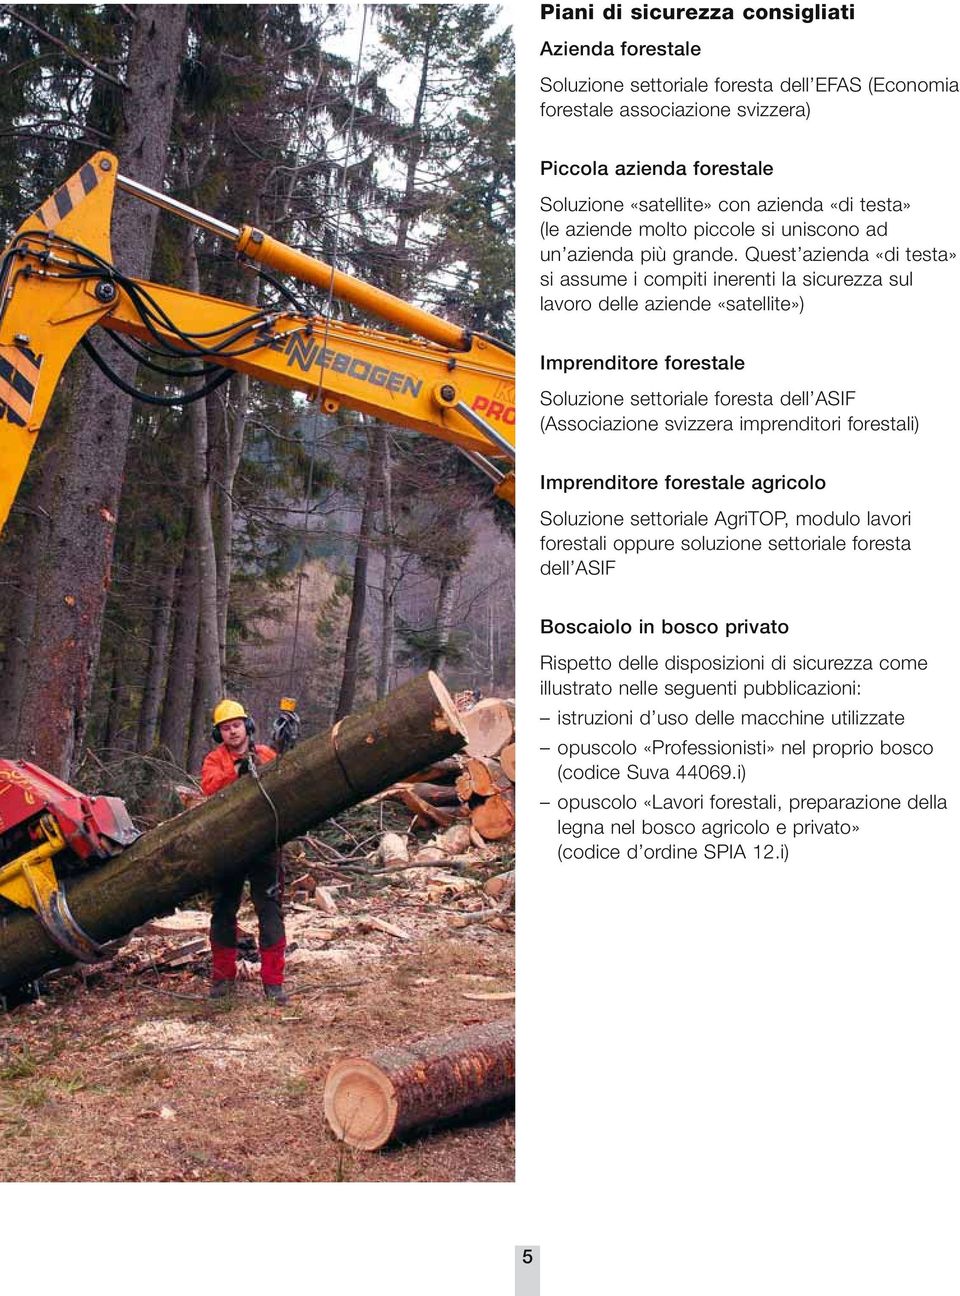 Quest azienda «di testa» si assume i compiti inerenti la sicurezza sul lavoro delle aziende «satellite») Imprenditore forestale Soluzione settoriale foresta dell ASIF (Associazione svizzera